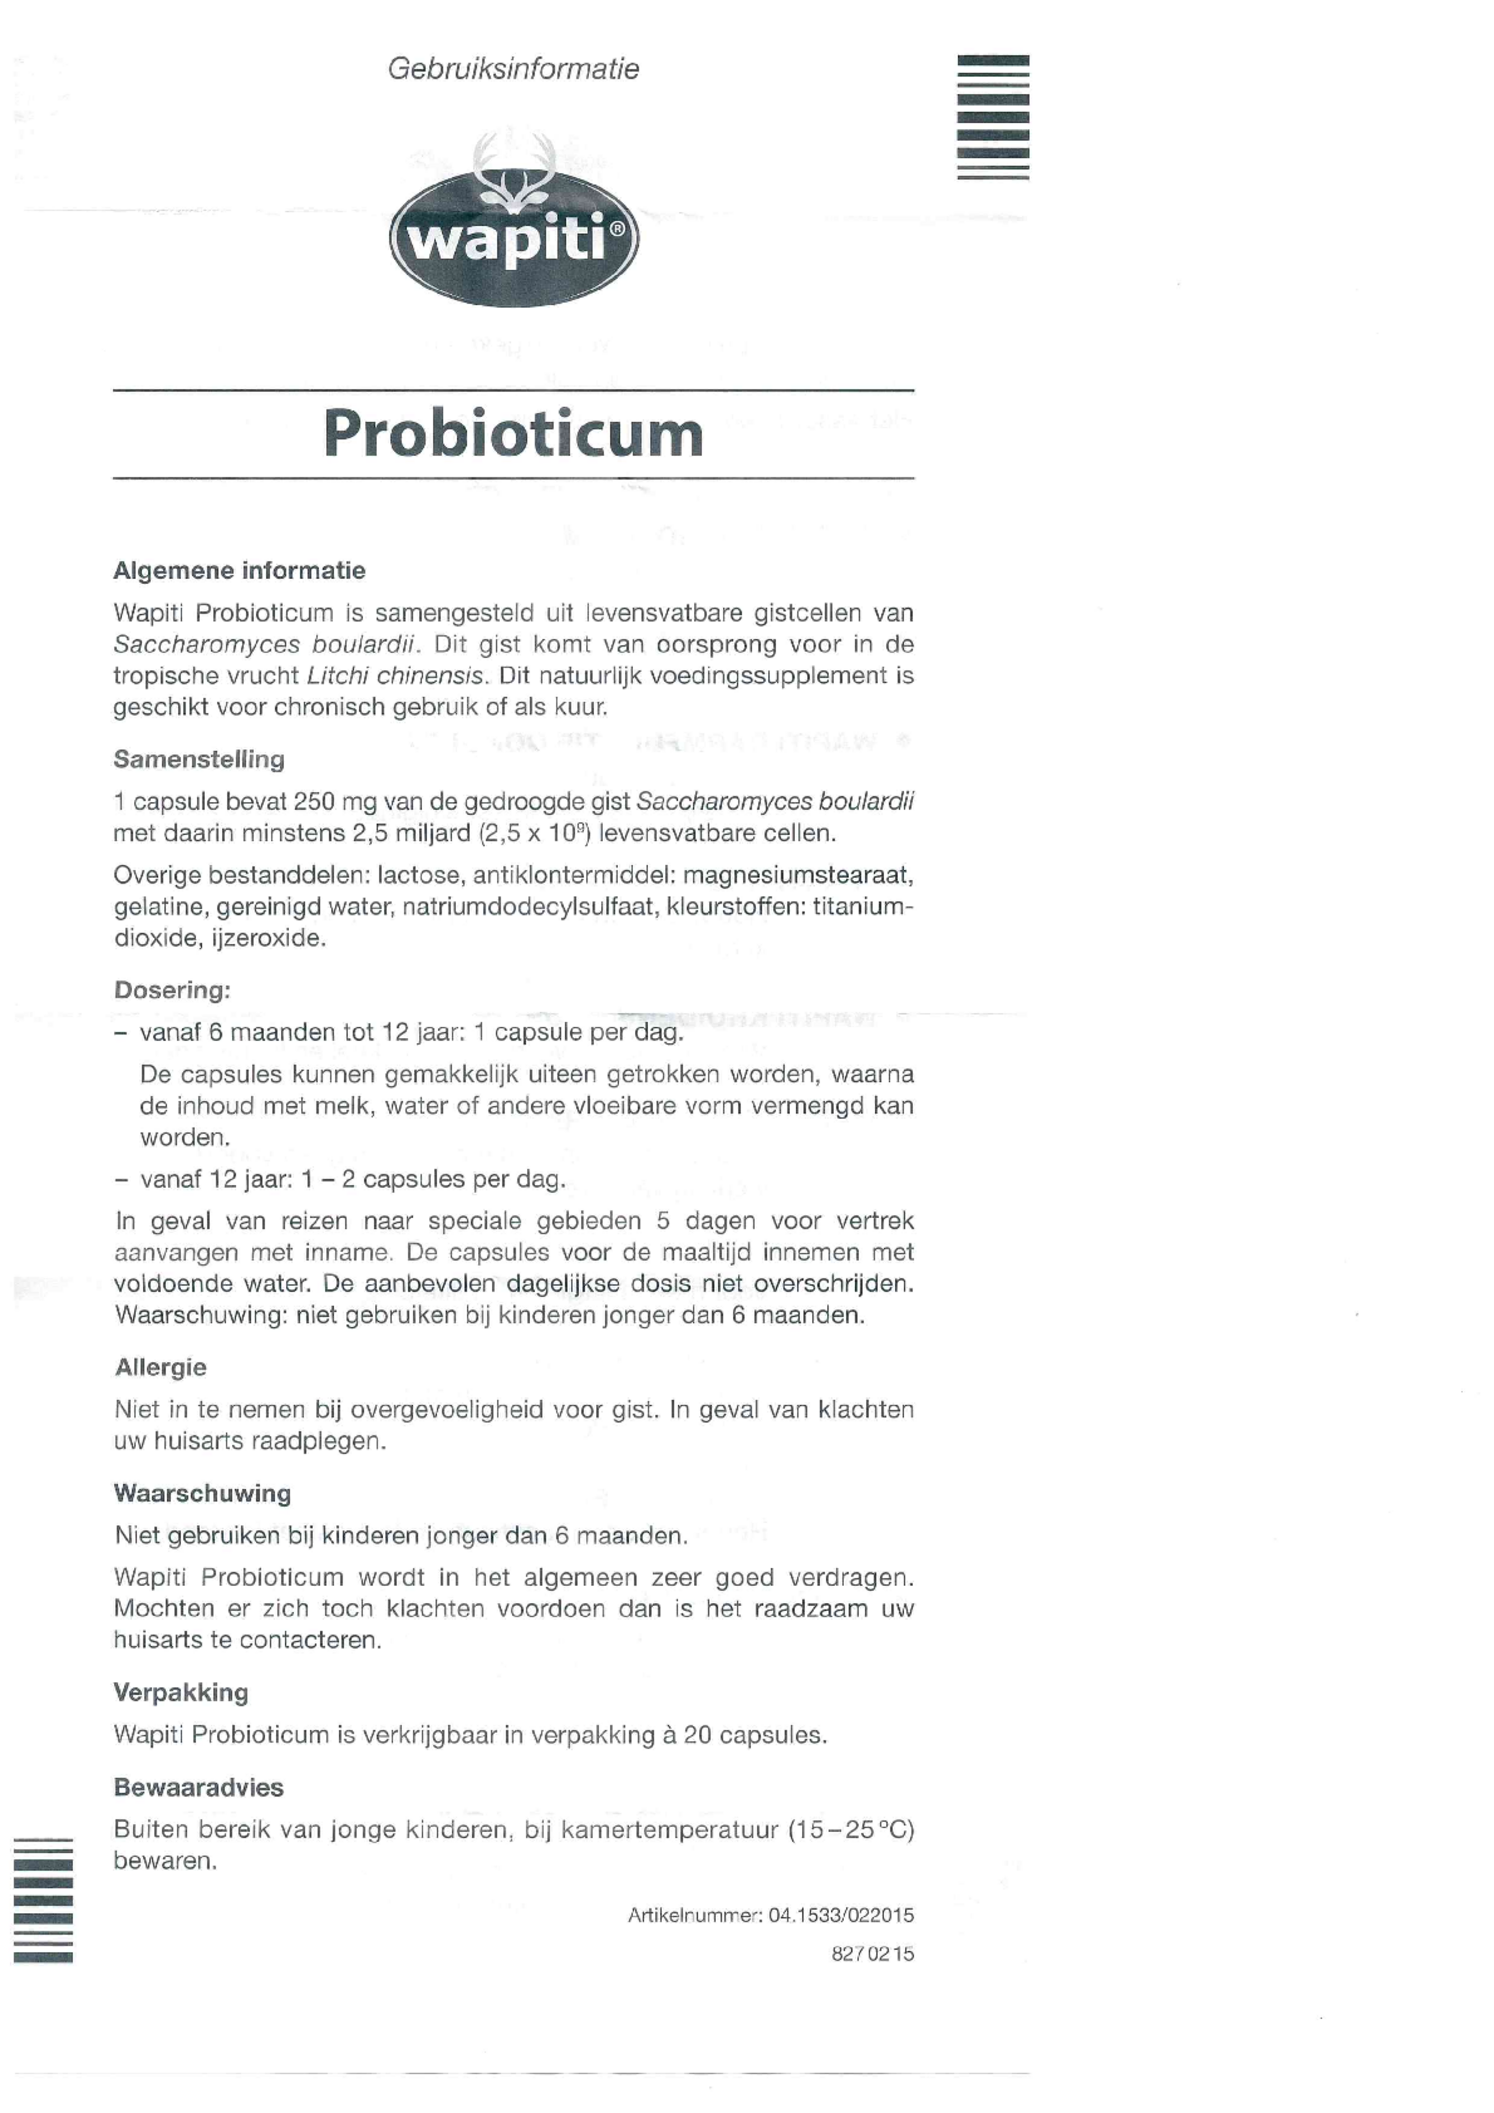 Probioticum Capsules afbeelding van document #1, gebruiksaanwijzing